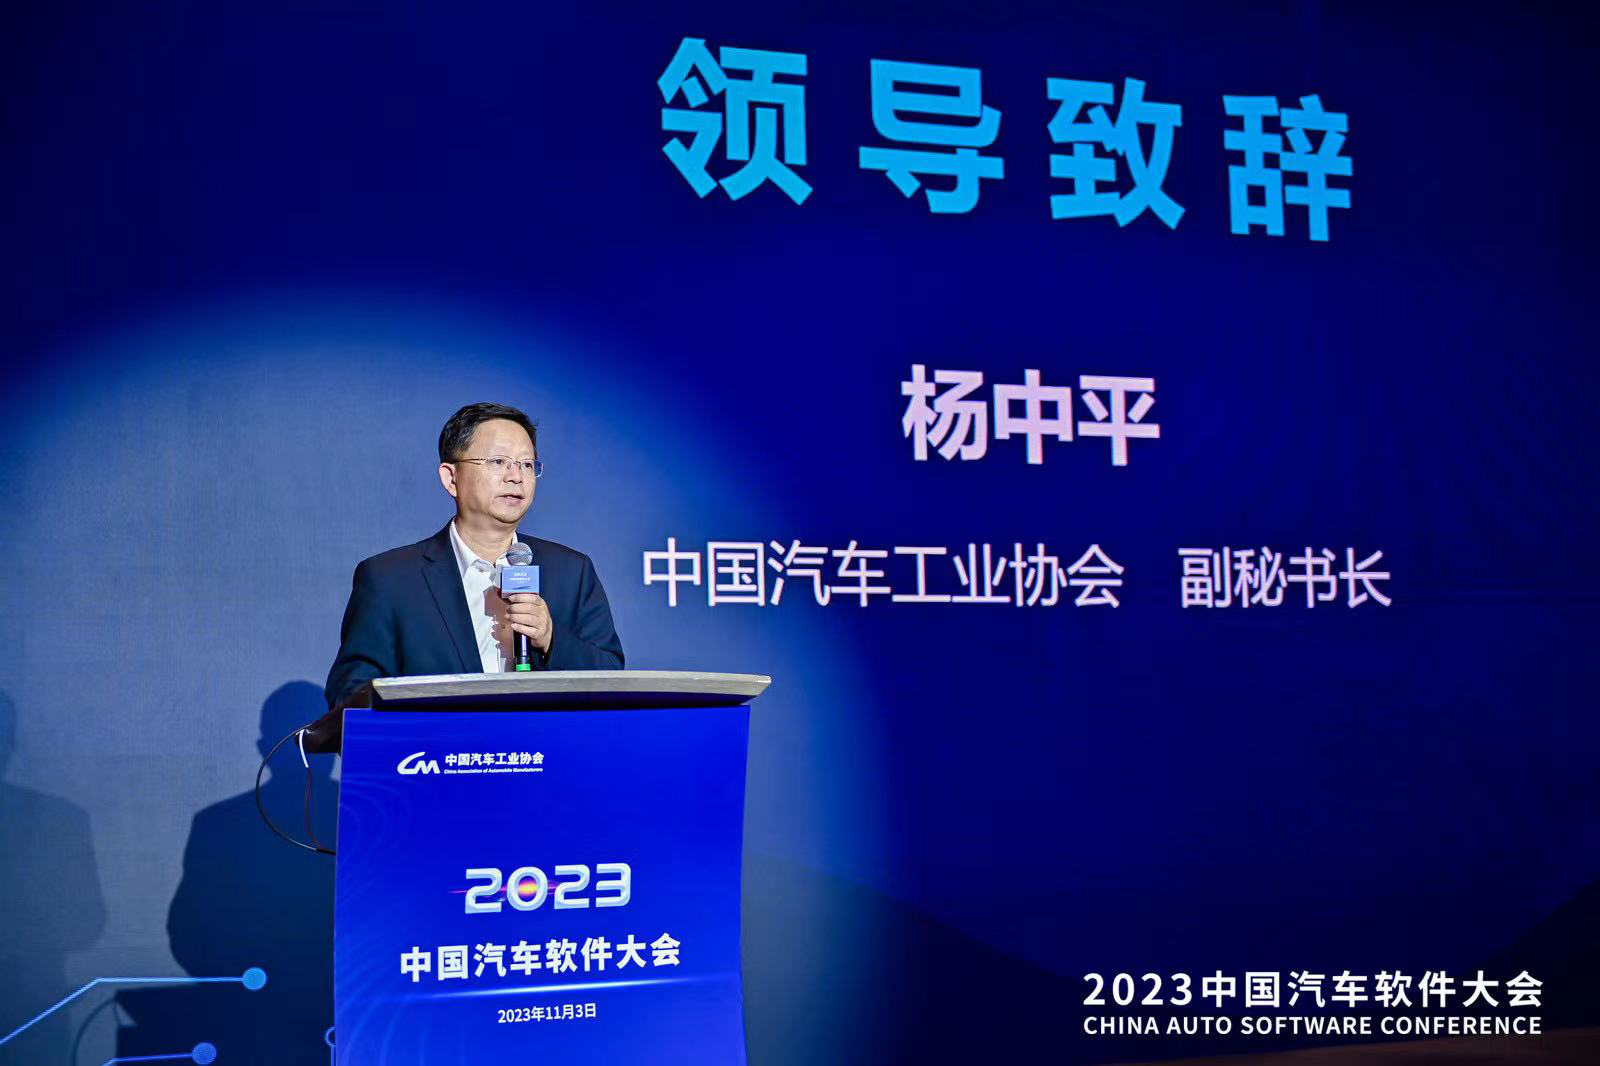 中汽协会杨中平：软硬件企业要尽早布局关键领域汽车产品研发